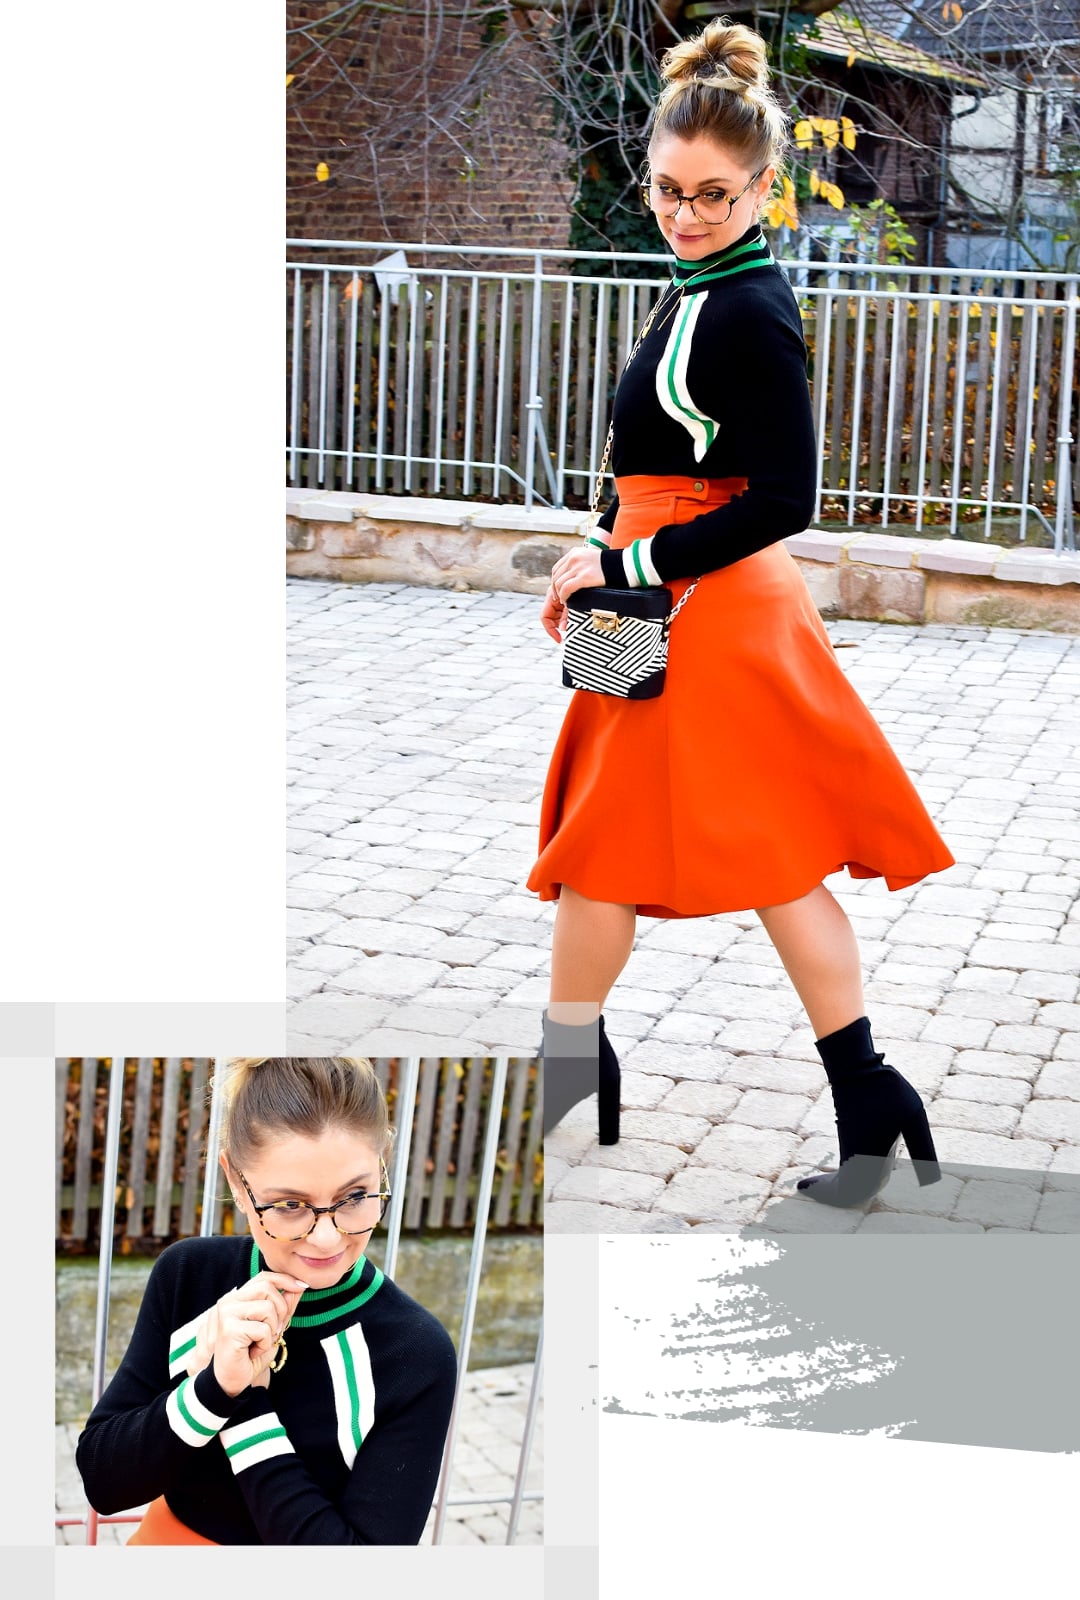 Welche Farben passen zu Orange? Wie style ich Orange? Modeblogger Tipps